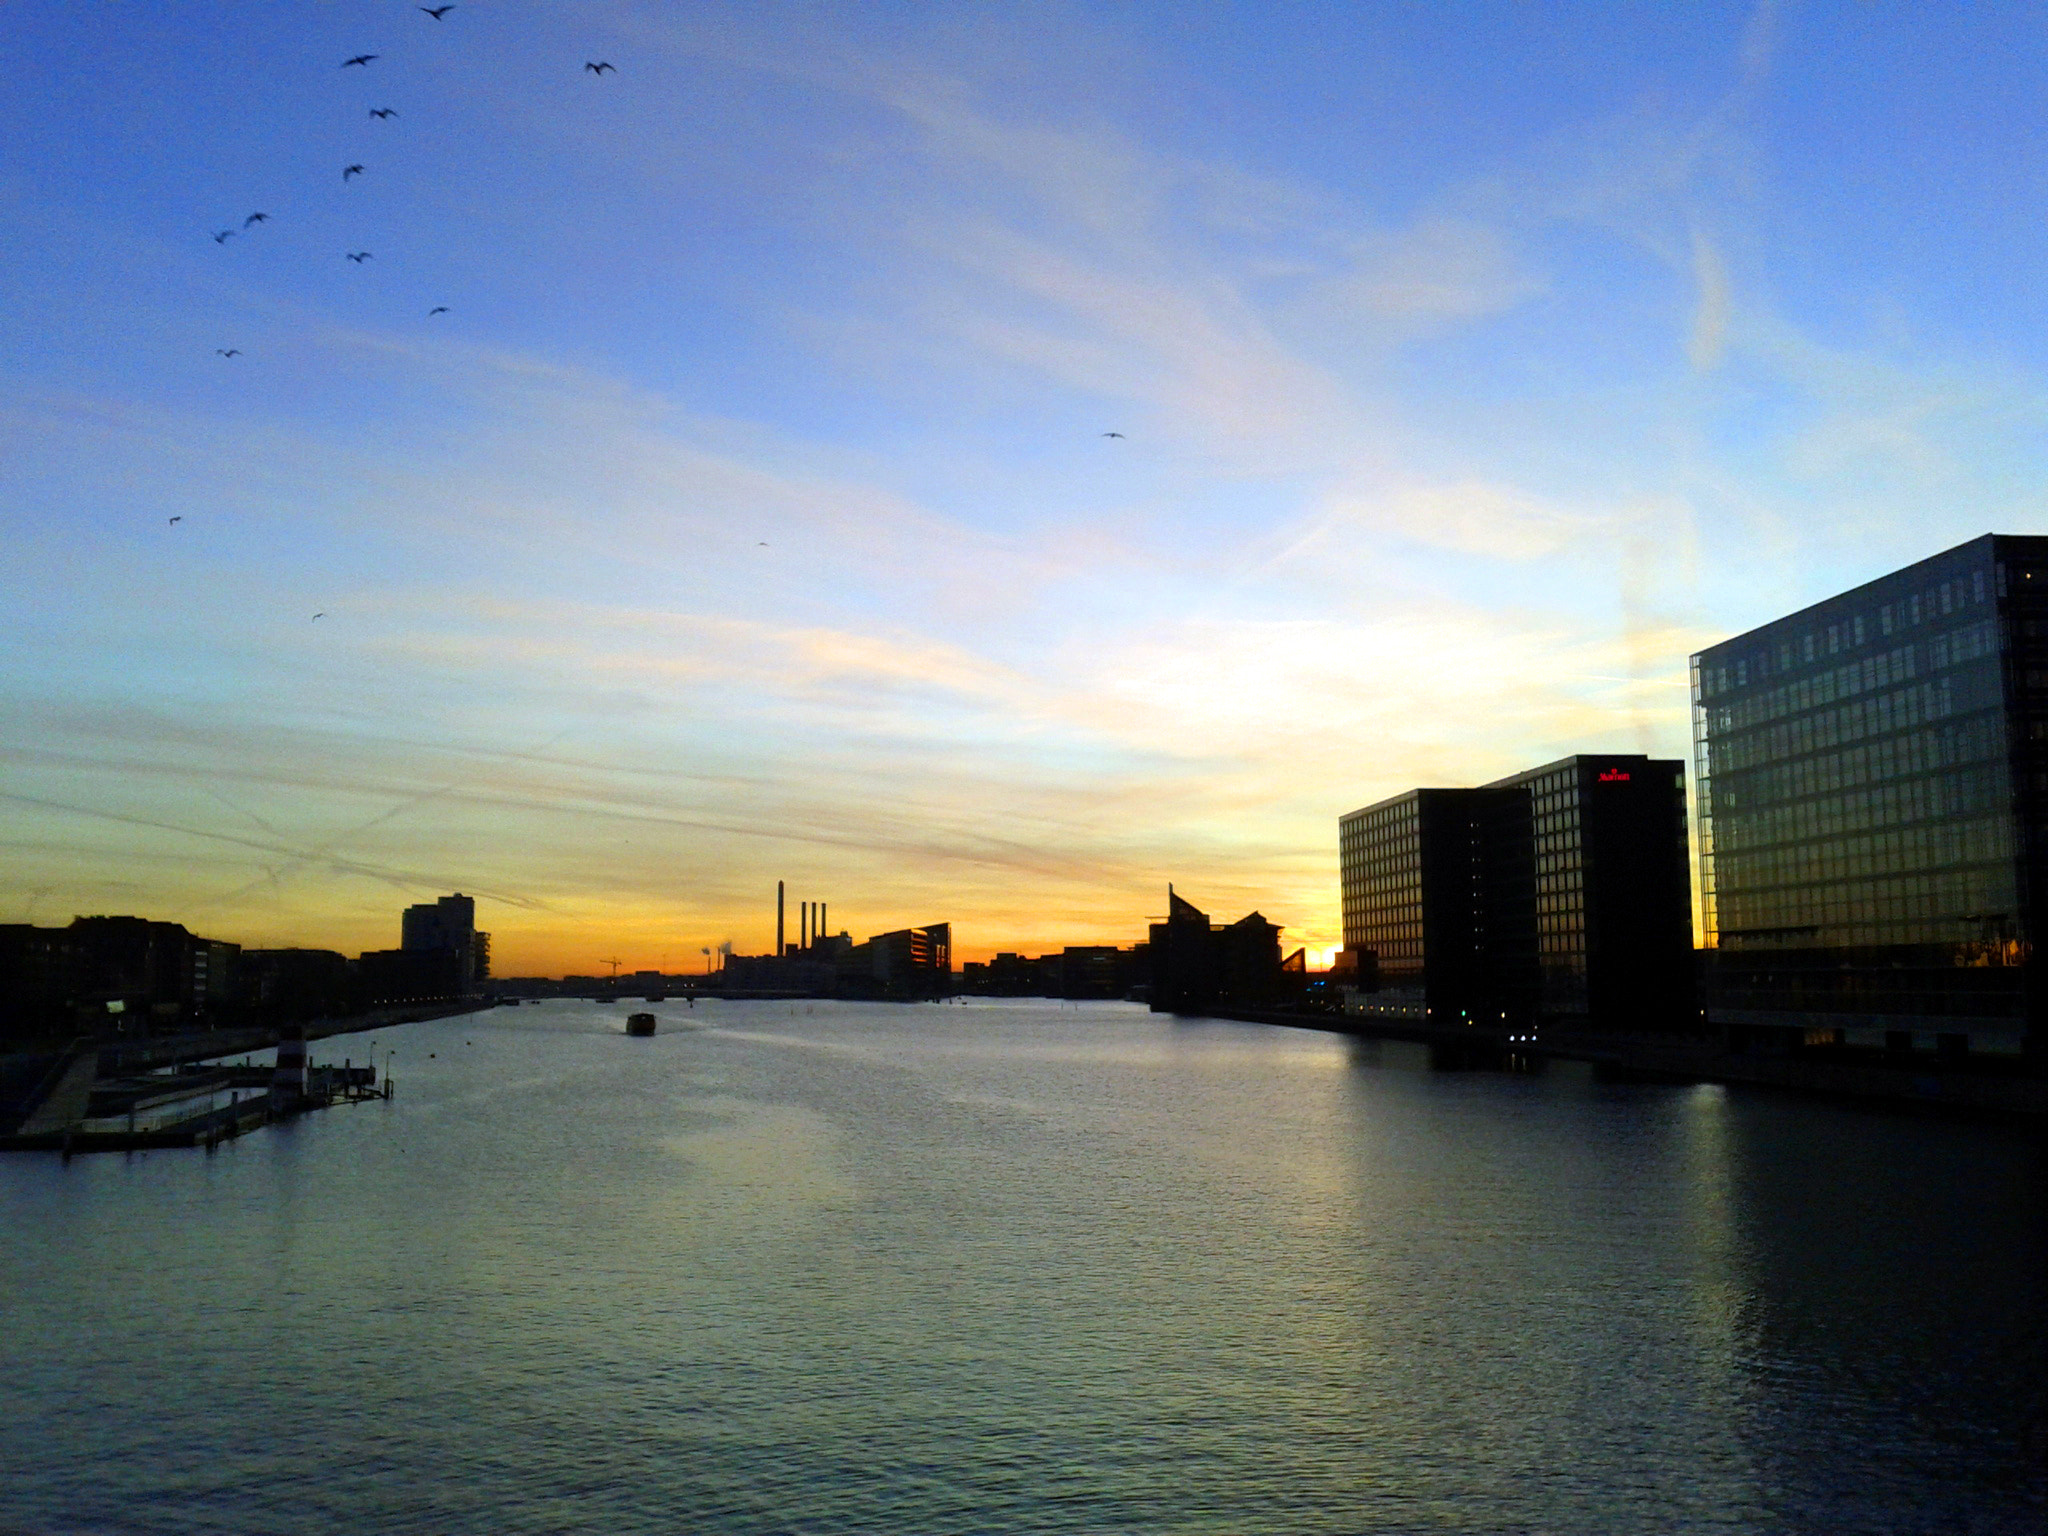 Google Nexus S sample photo. Evening in kopenhavn photography